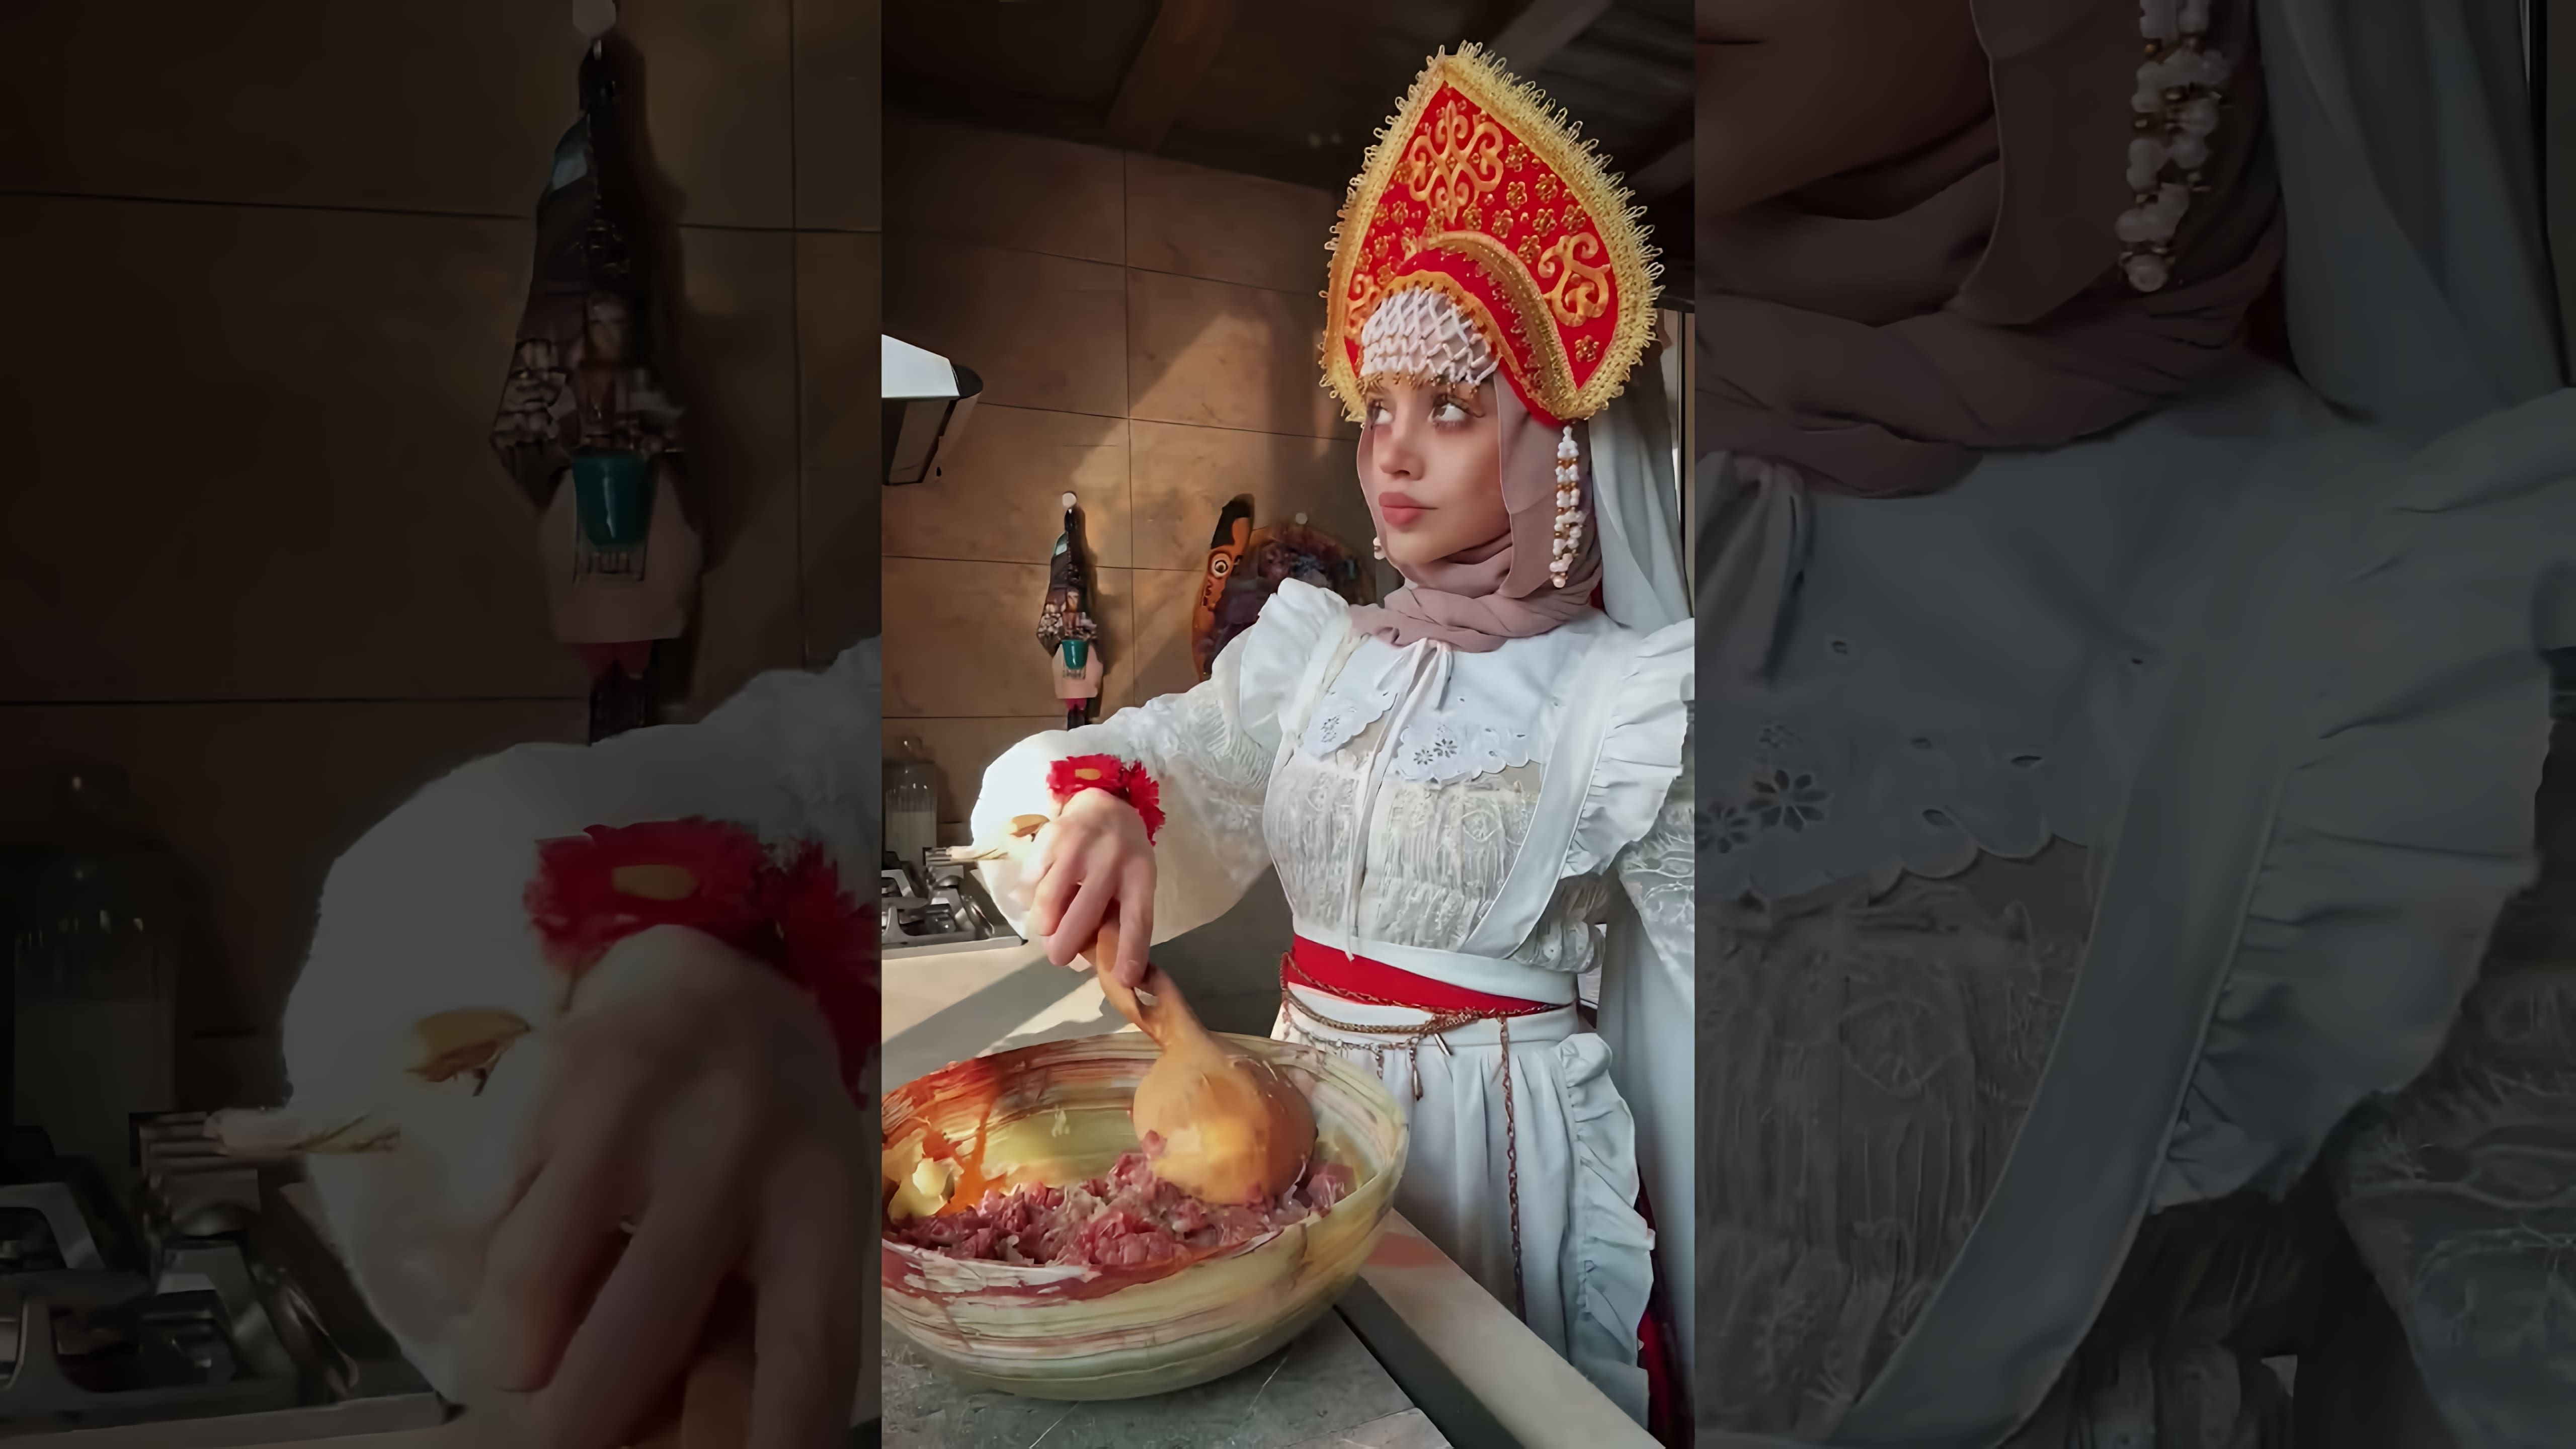 В этом видео-ролике будет показан процесс приготовления пельменей в России, с использованием традиционных рецептов и ингредиентов